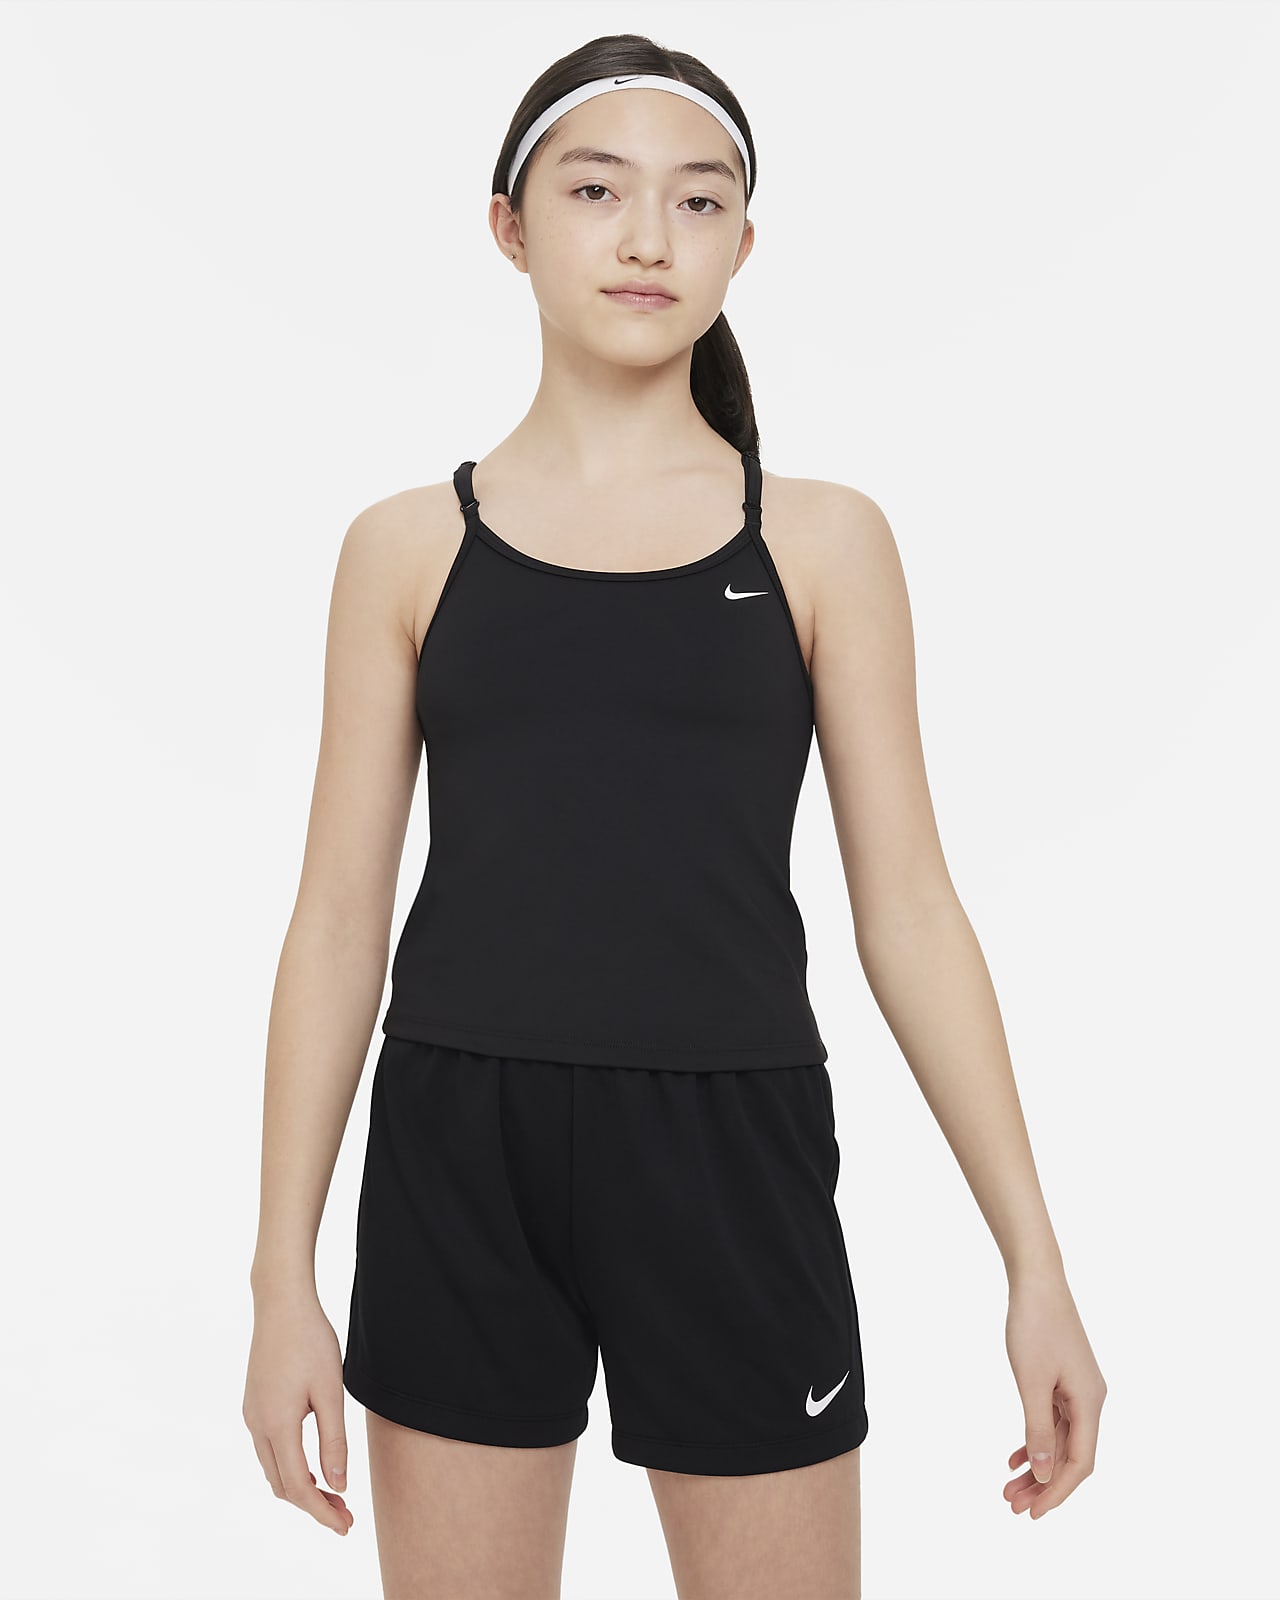 Camisola sem mangas com sutiã de desporto incorporado Nike Indy Júnior (Rapariga)